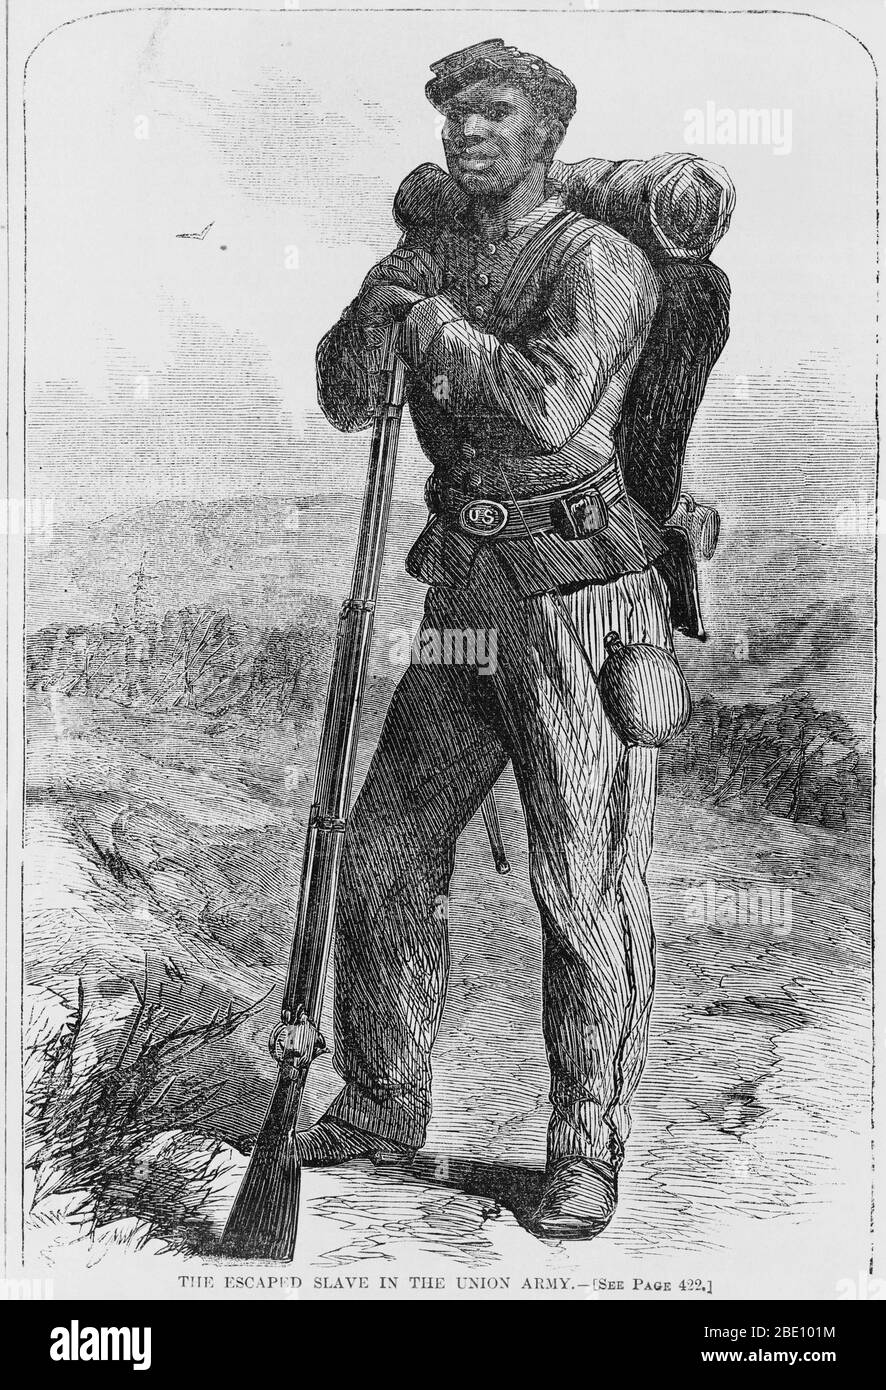 Incisione in legno di uno schiavo fuggito che ha aderito all'esercito dell'Unione nella guerra civile americana. Soldati neri 'fuggiti', schiavi fuggiti, furono considerati 'contrabbando di guerra' dal nord, in una dichiarazione del generale Benjamin Butler nel maggio 1861. Combattevano con le truppe del Nord. Foto Stock